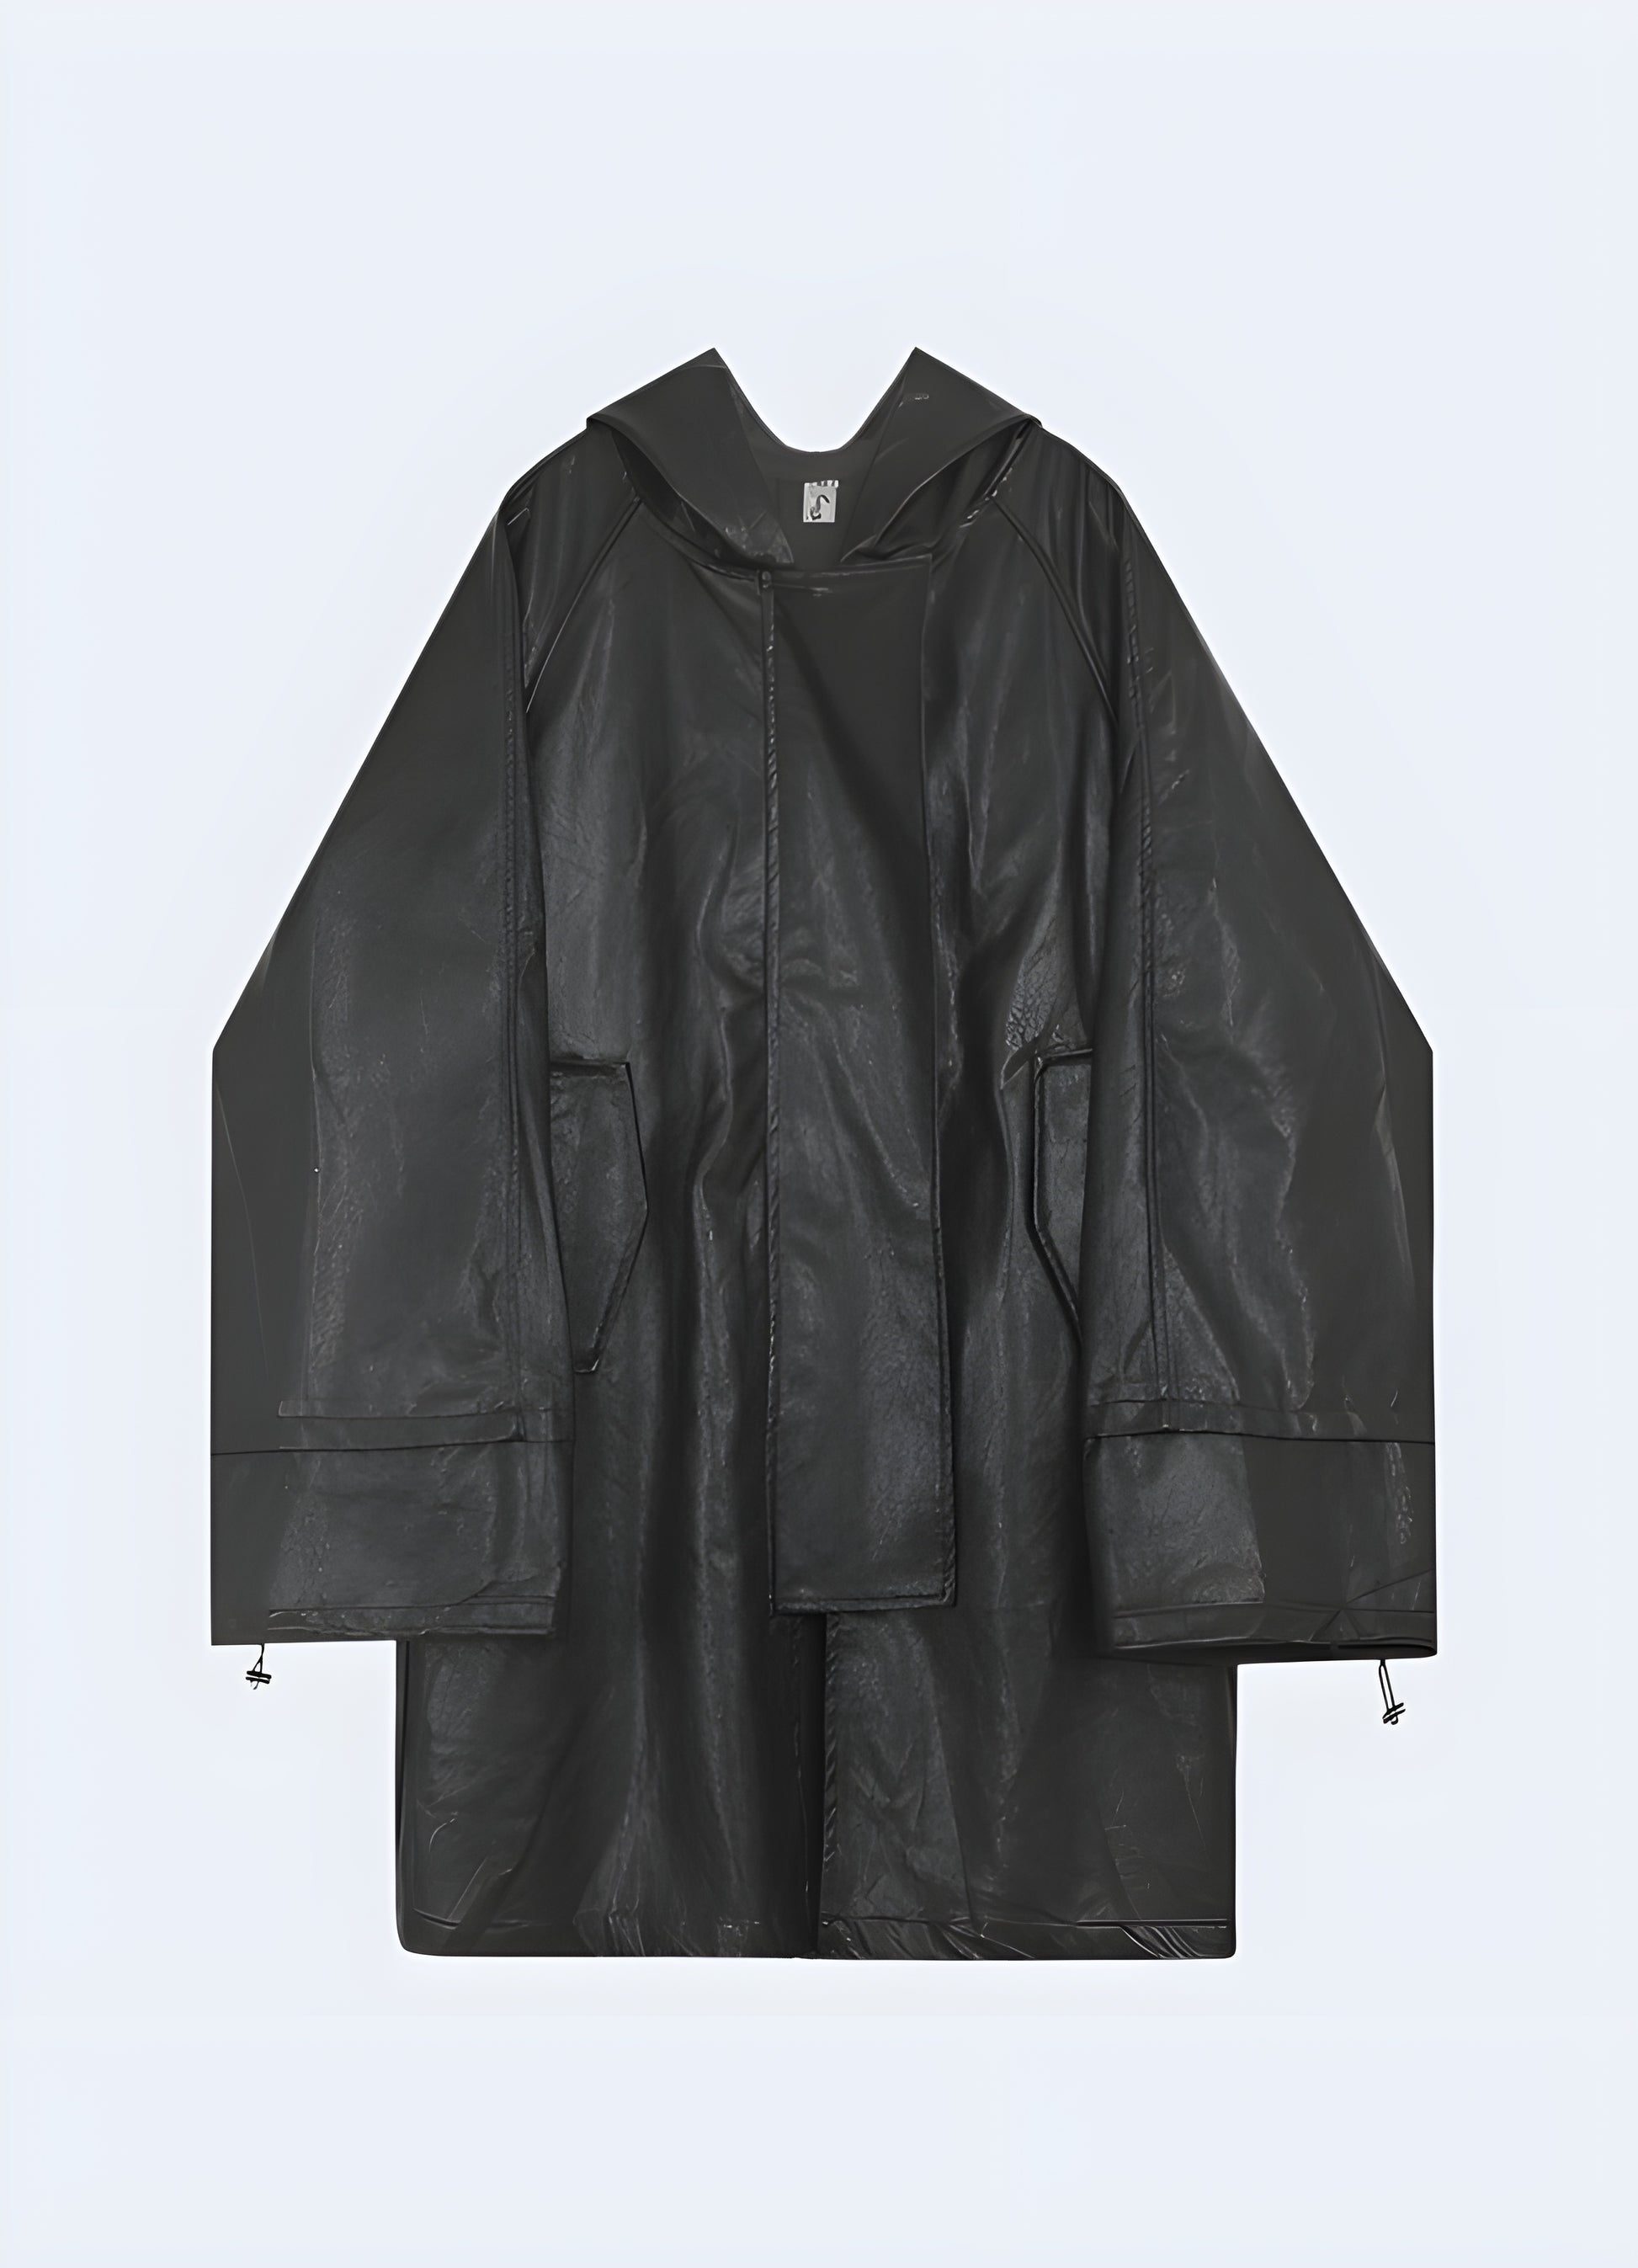 Seam sealed rain jacket with adjustable hem.